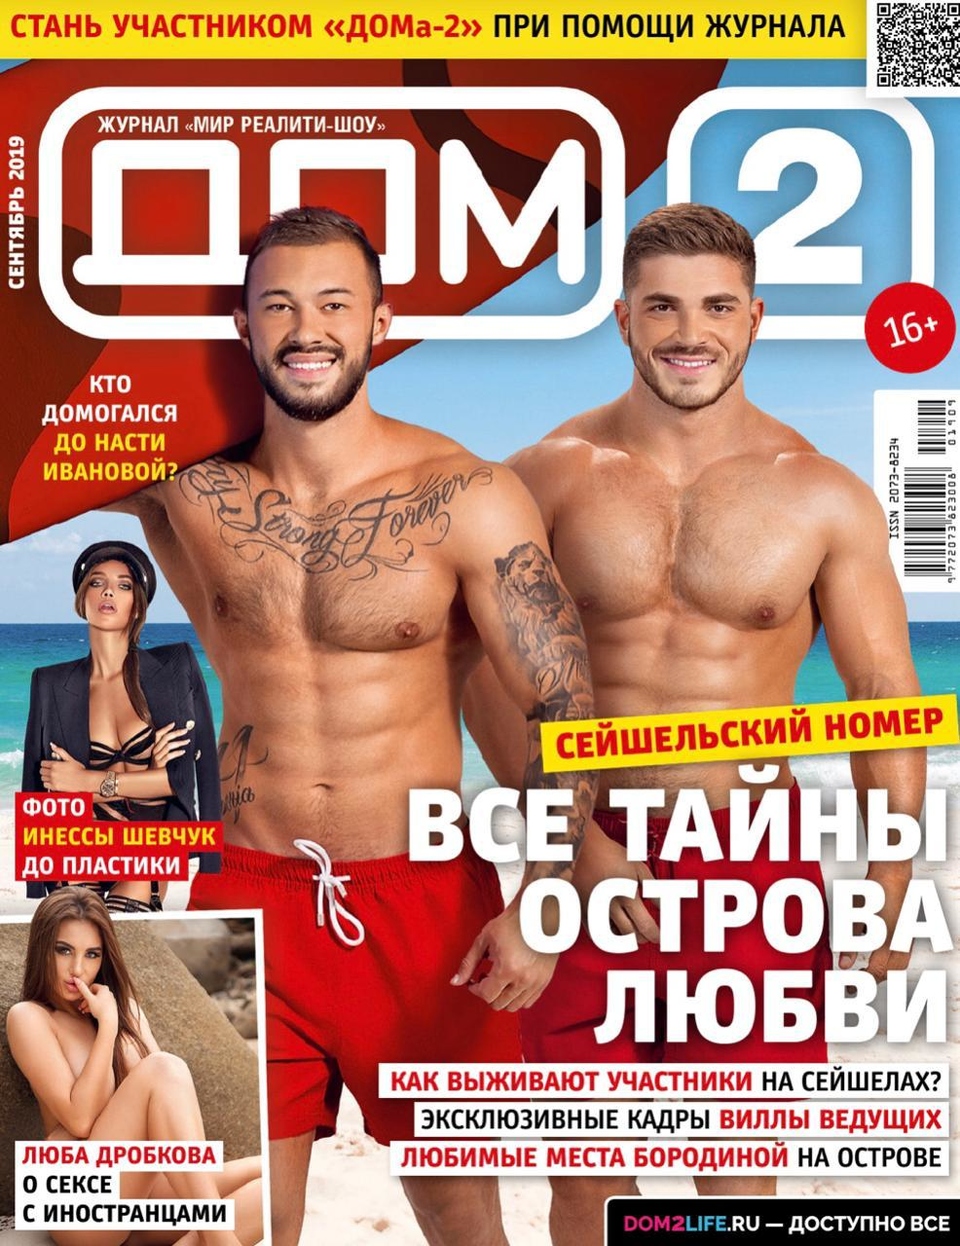 Новый выпуск журнала «ДОМ−2» уже в&nbsp;продаже&nbsp; Фото: журнал «ДОМ−2» 